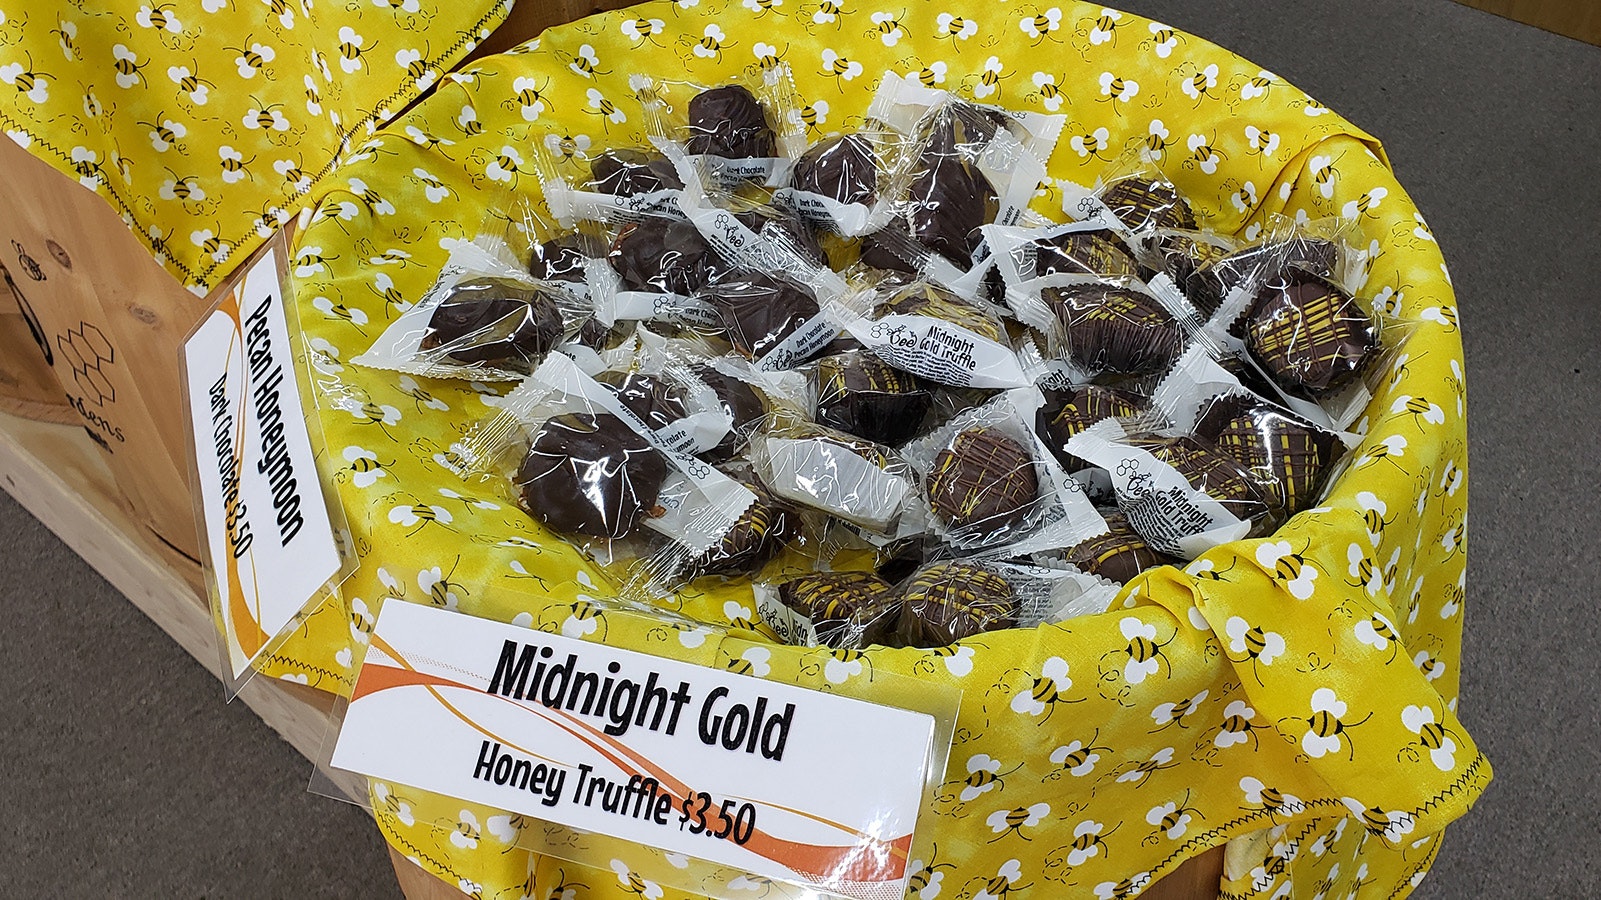 Midnight Gold truffles at Queen Been Gardens.